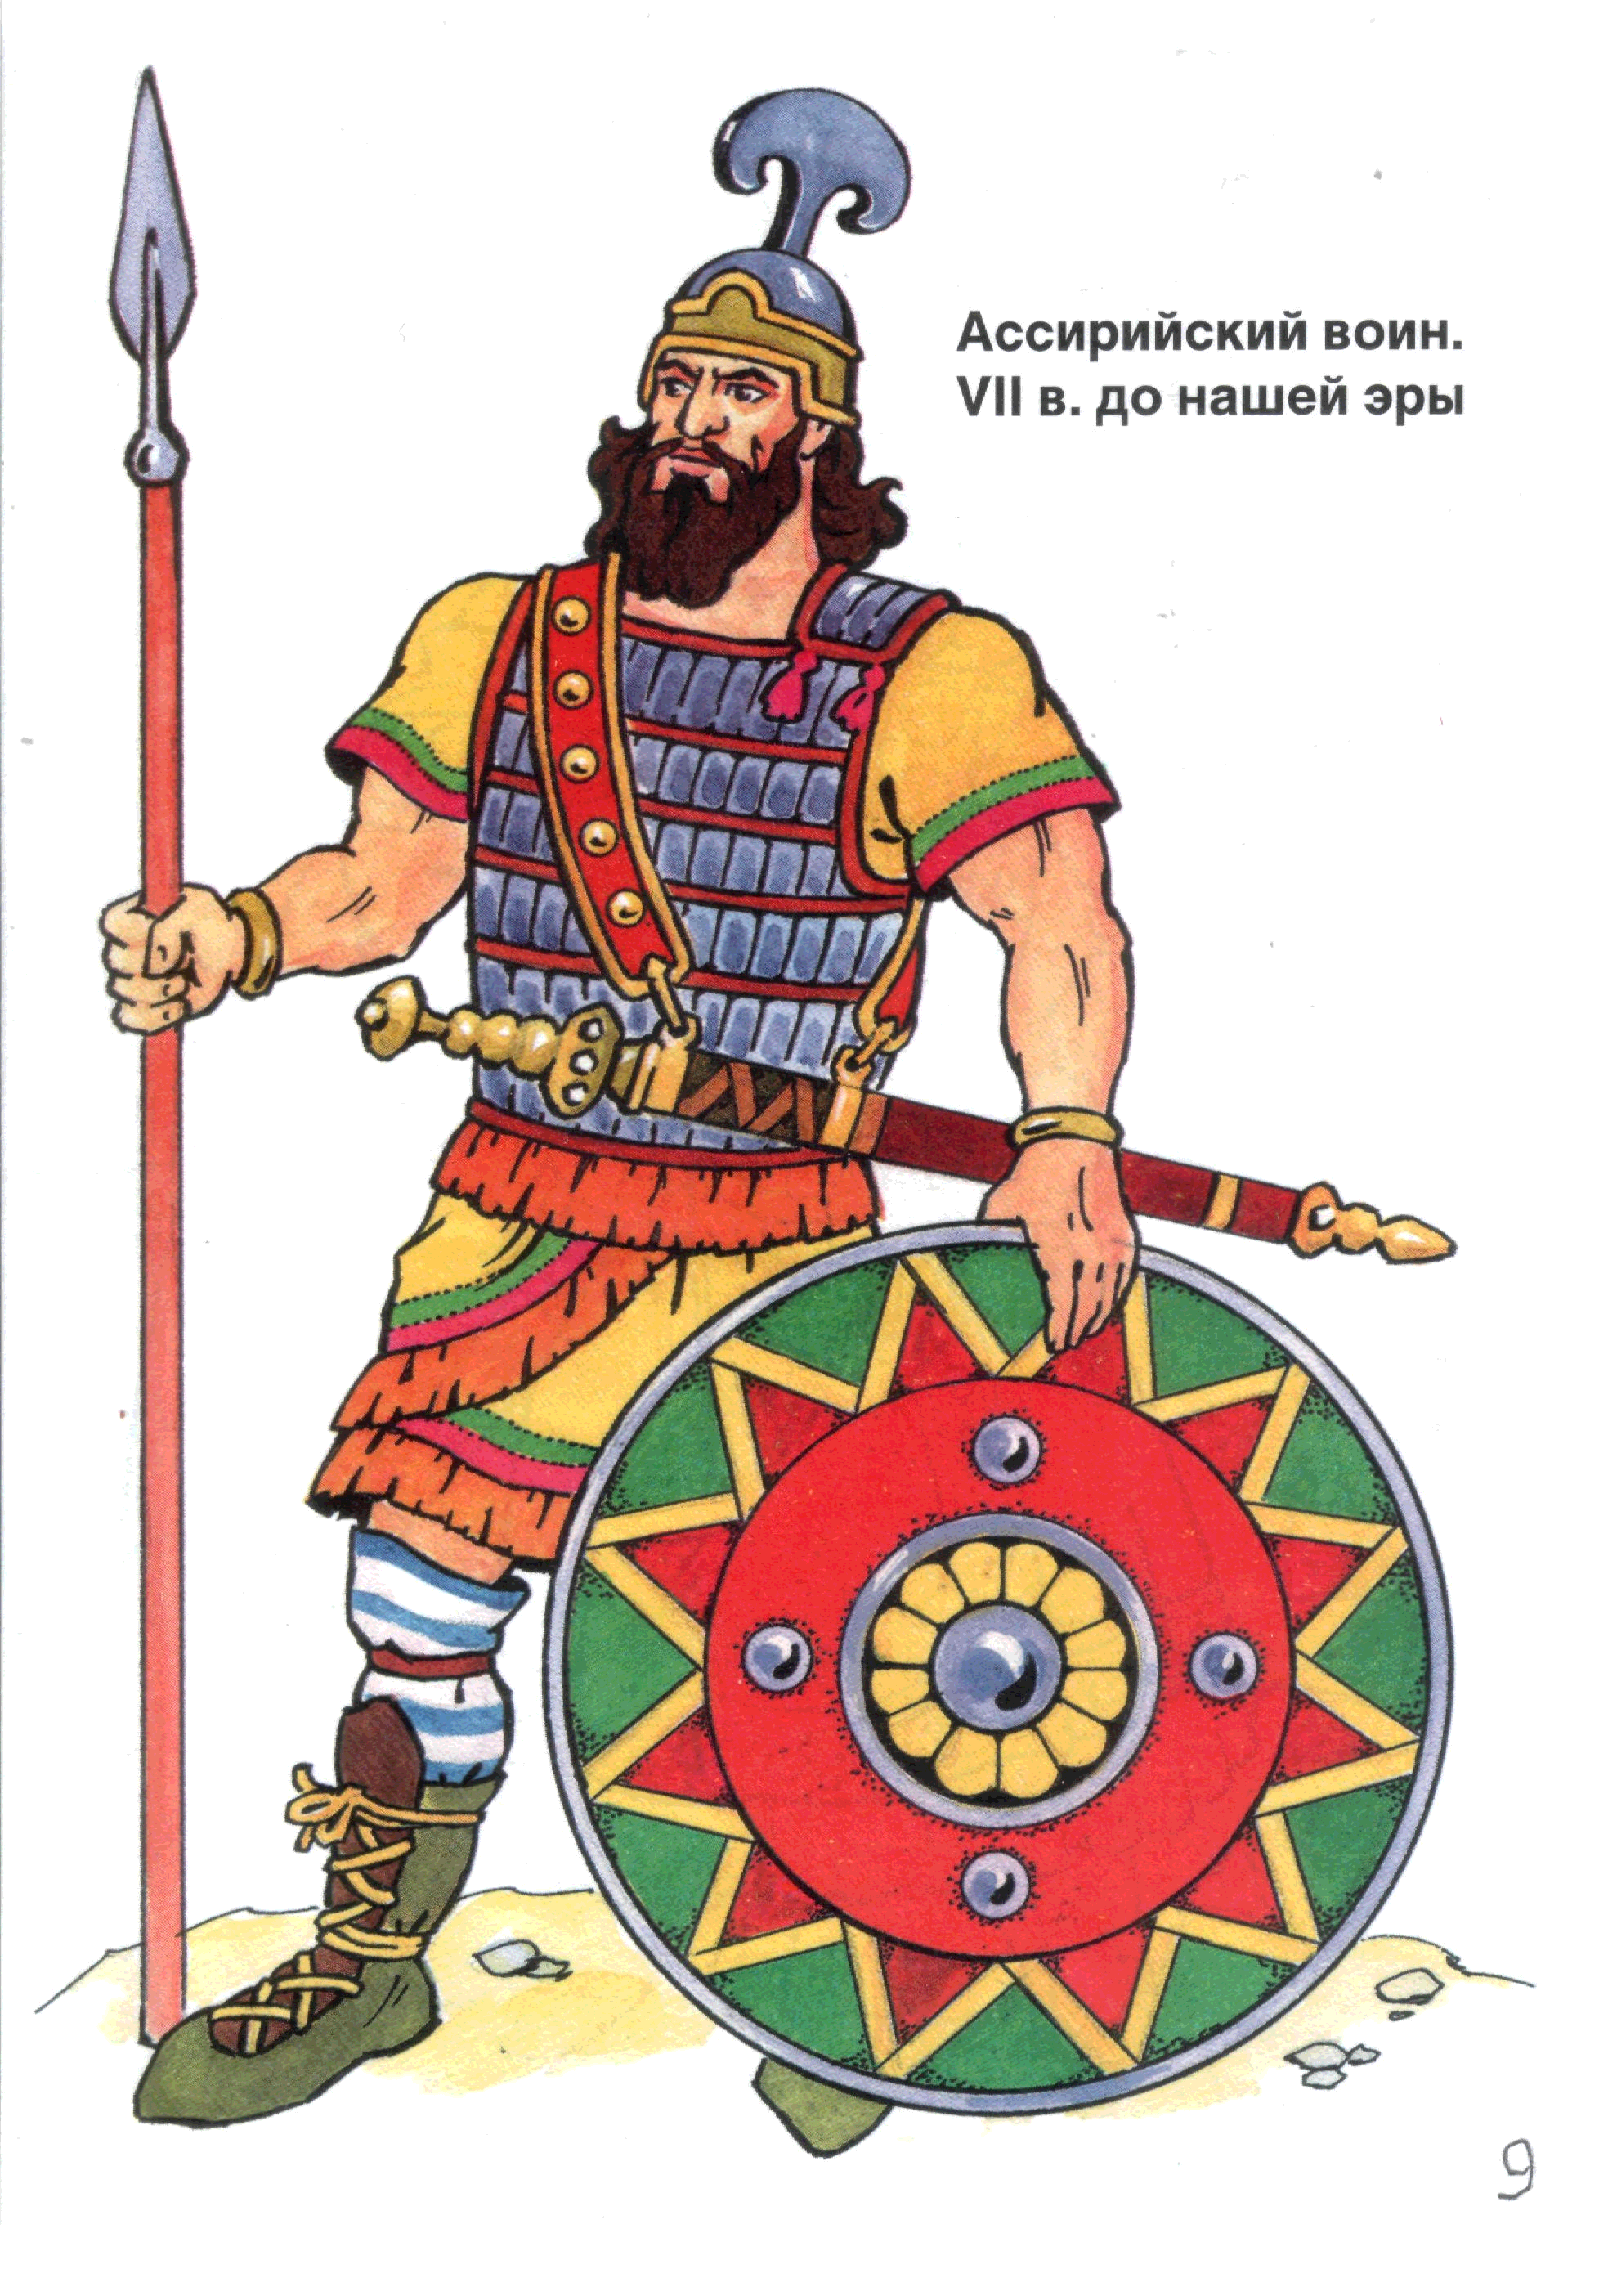 Изображение ассирийского воина